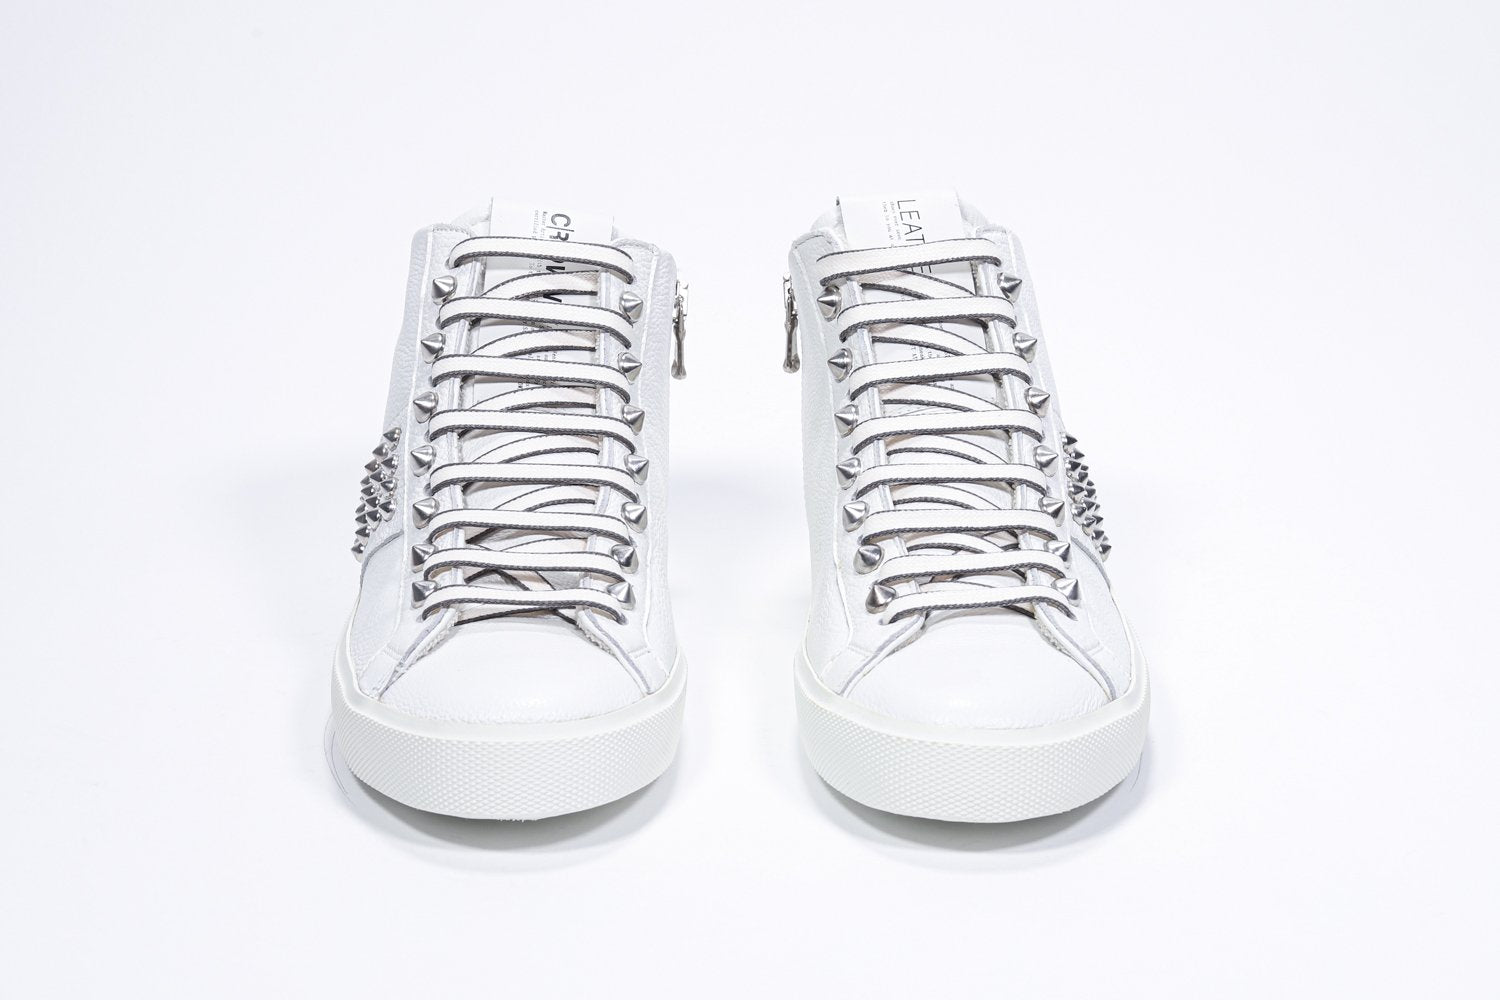 Vorderansicht des weißen Mid Top sneaker. Obermaterial aus Vollleder mit Nieten, einem internen Reißverschluss und weißer Gummisohle.